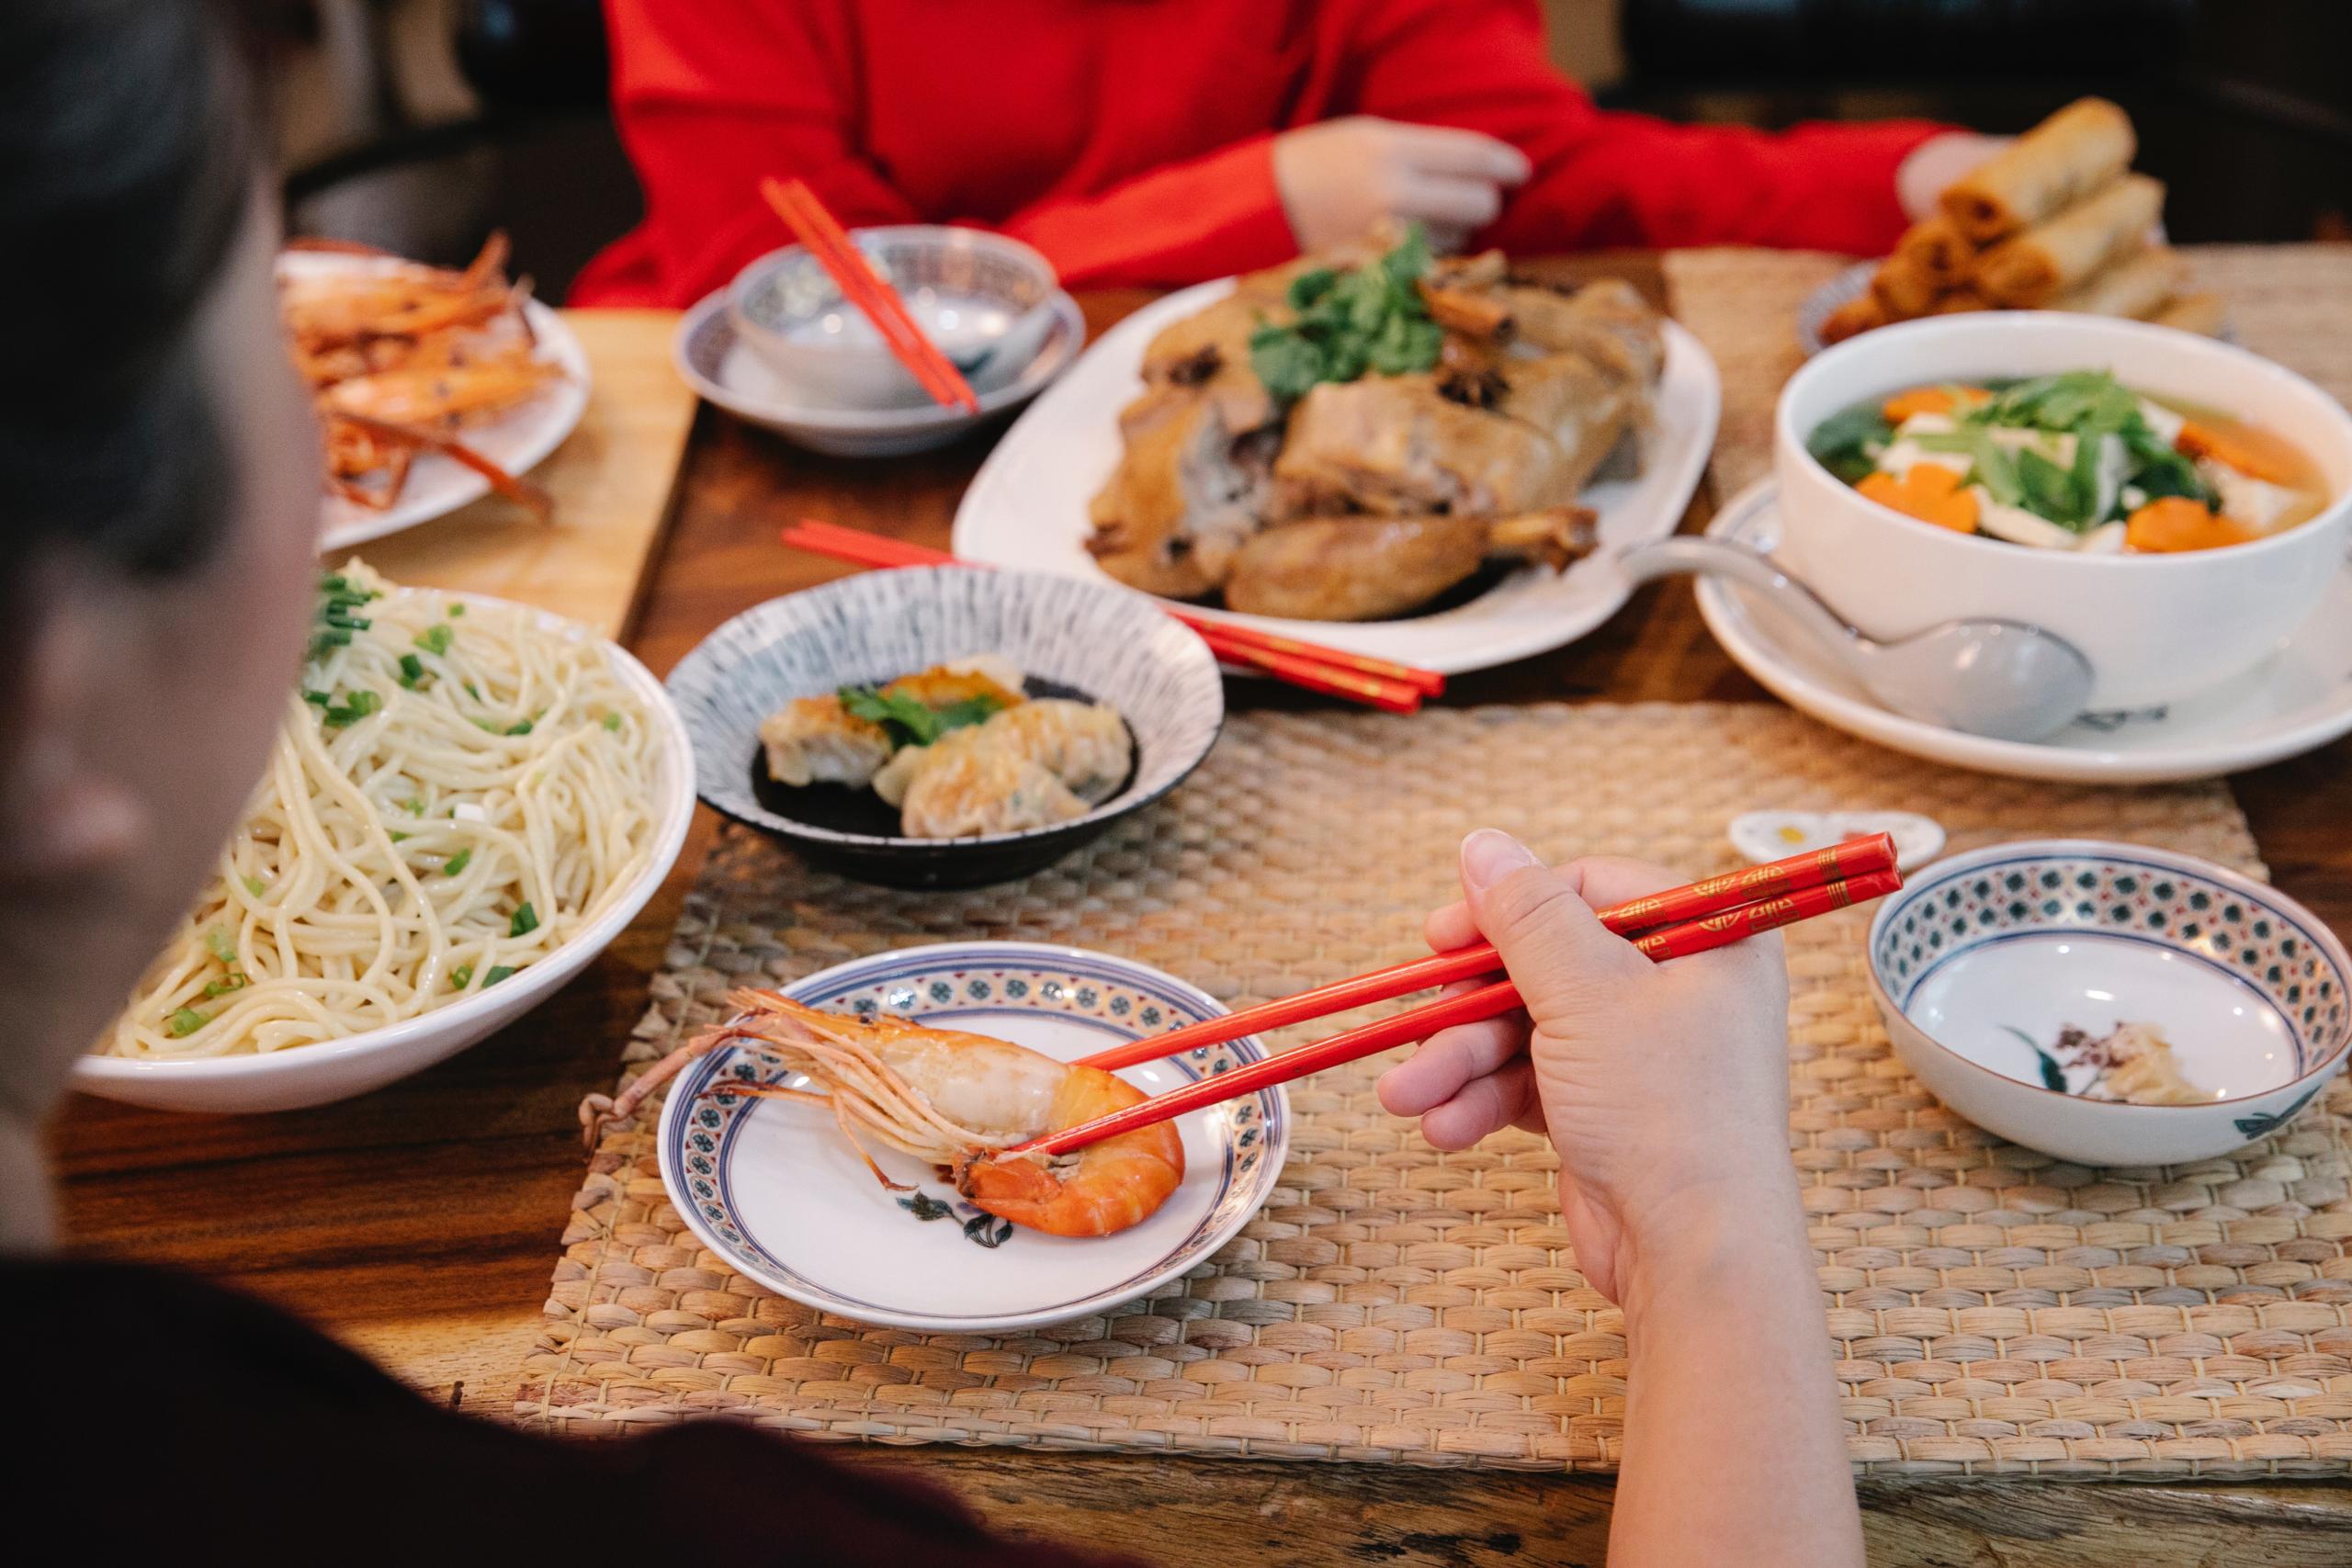 Asian Cuisine on a table